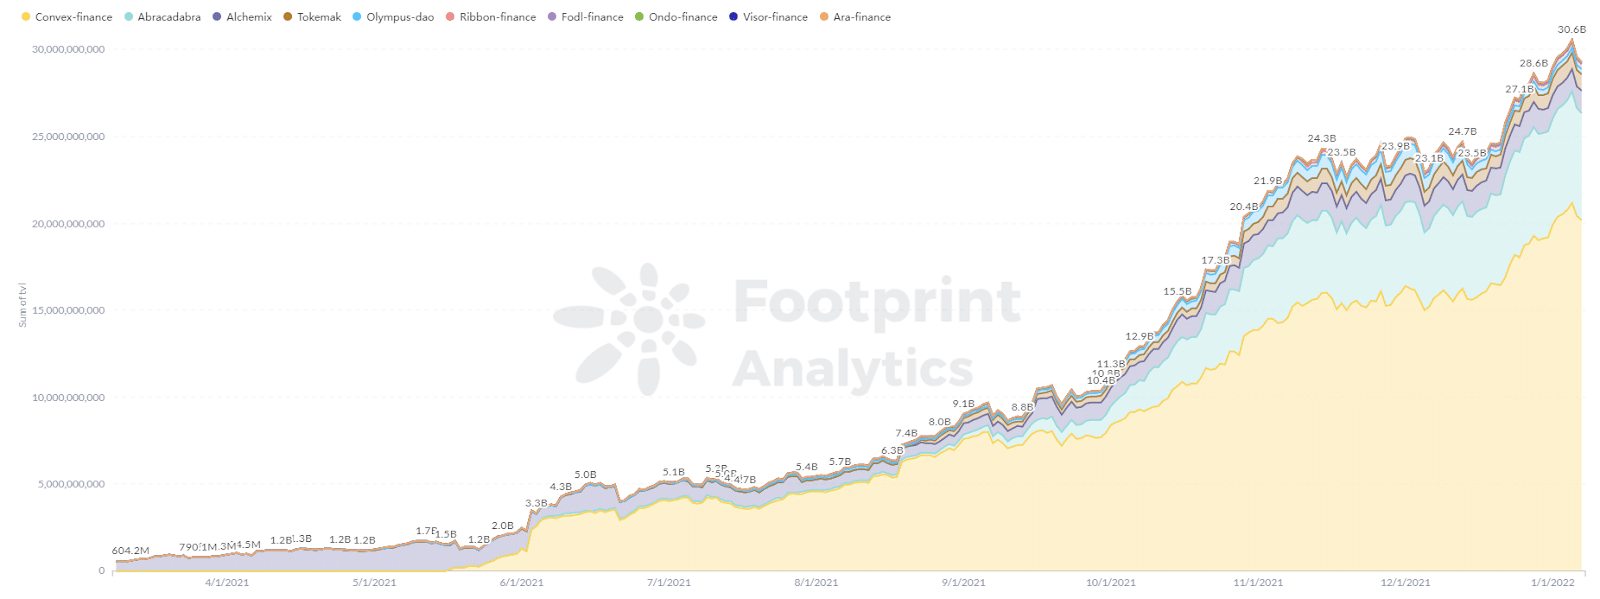 Footprint Analytics - TVL der DeFi 2.0 Projekte stieg von 0 auf 30 Milliarden im Jahr 2021